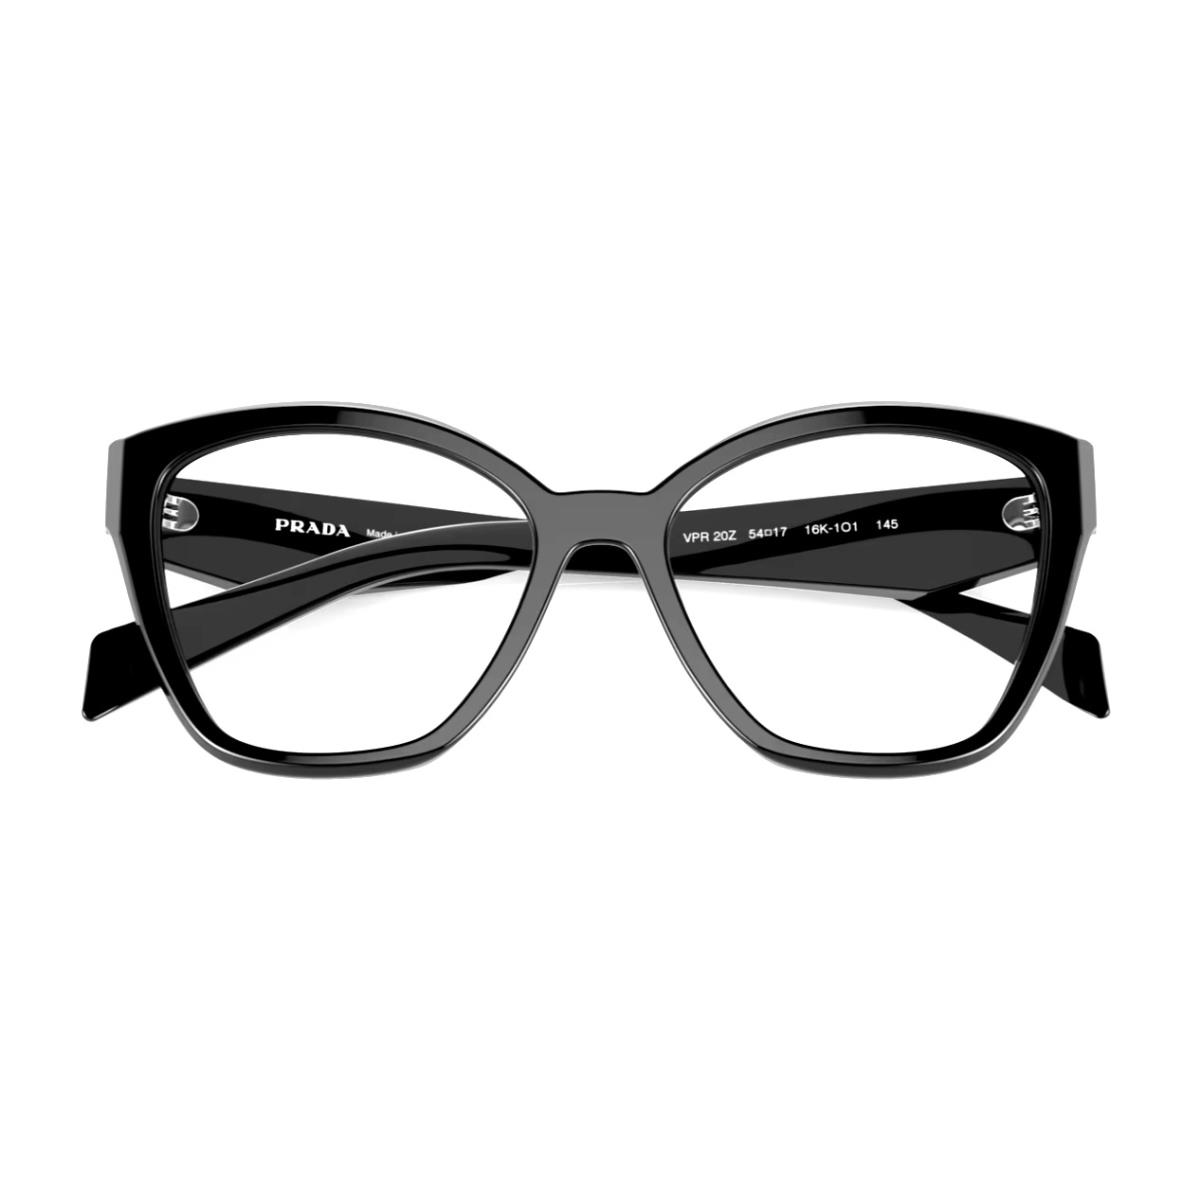 Prada Cat-eye Eyeglasses Vpr 20Z 16K-1O1 54-17 145 Large Shiny Black Frames